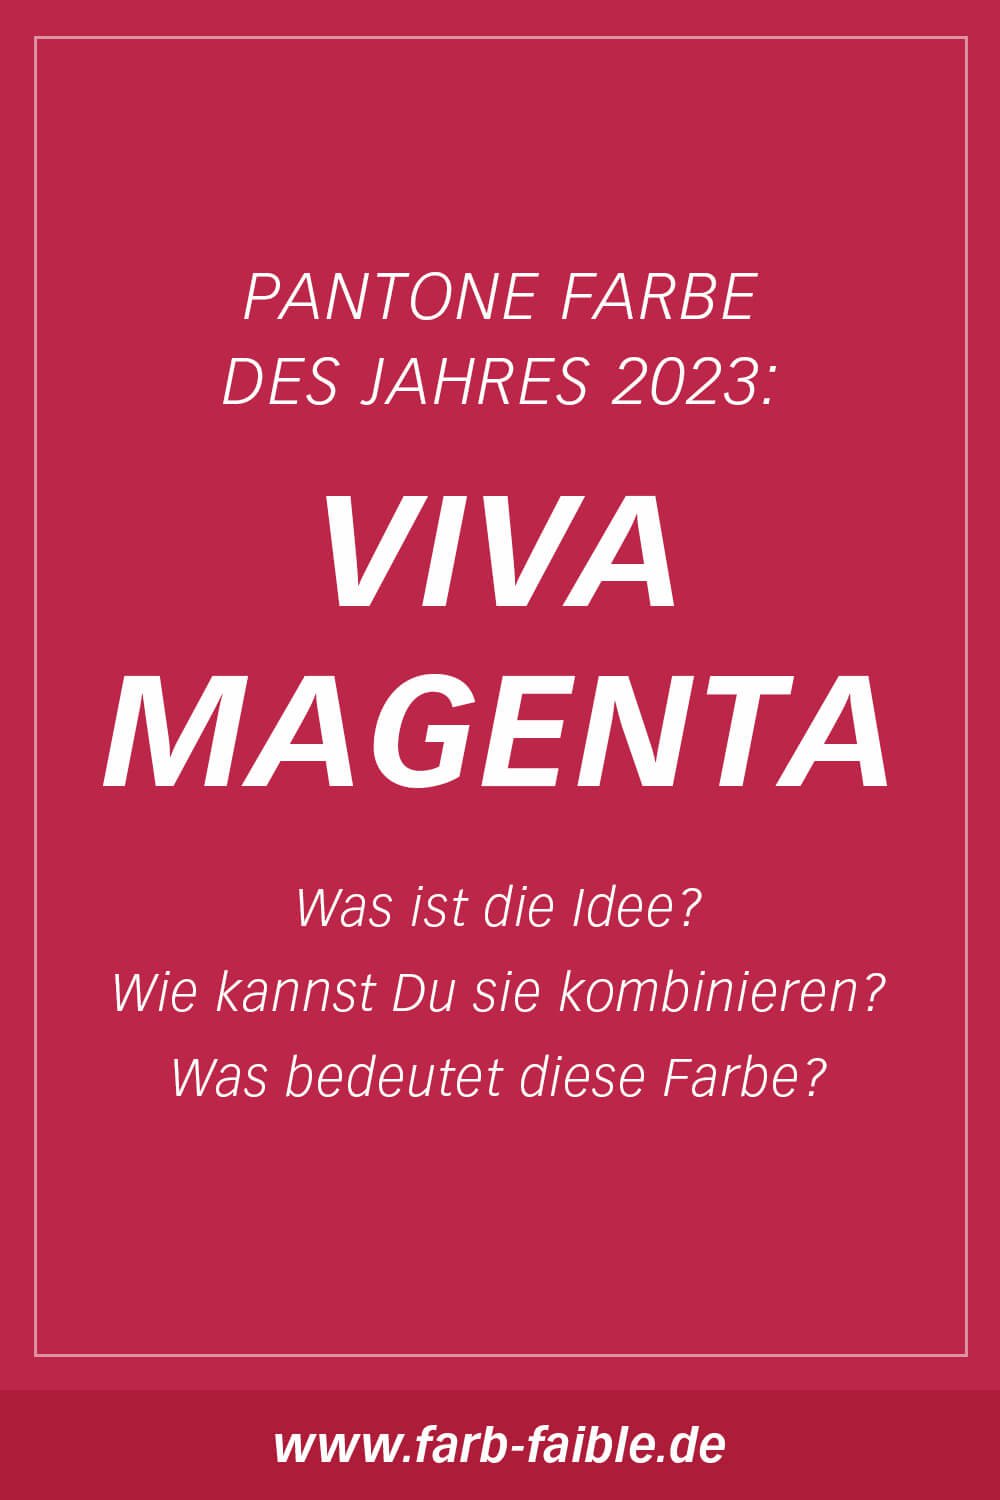 Pantone Farbe des Jahres 2023 Viva Magenta: Was ist die Idee? Wie kannst Du sie kombinieren? Was bedeutet diese Farbe?